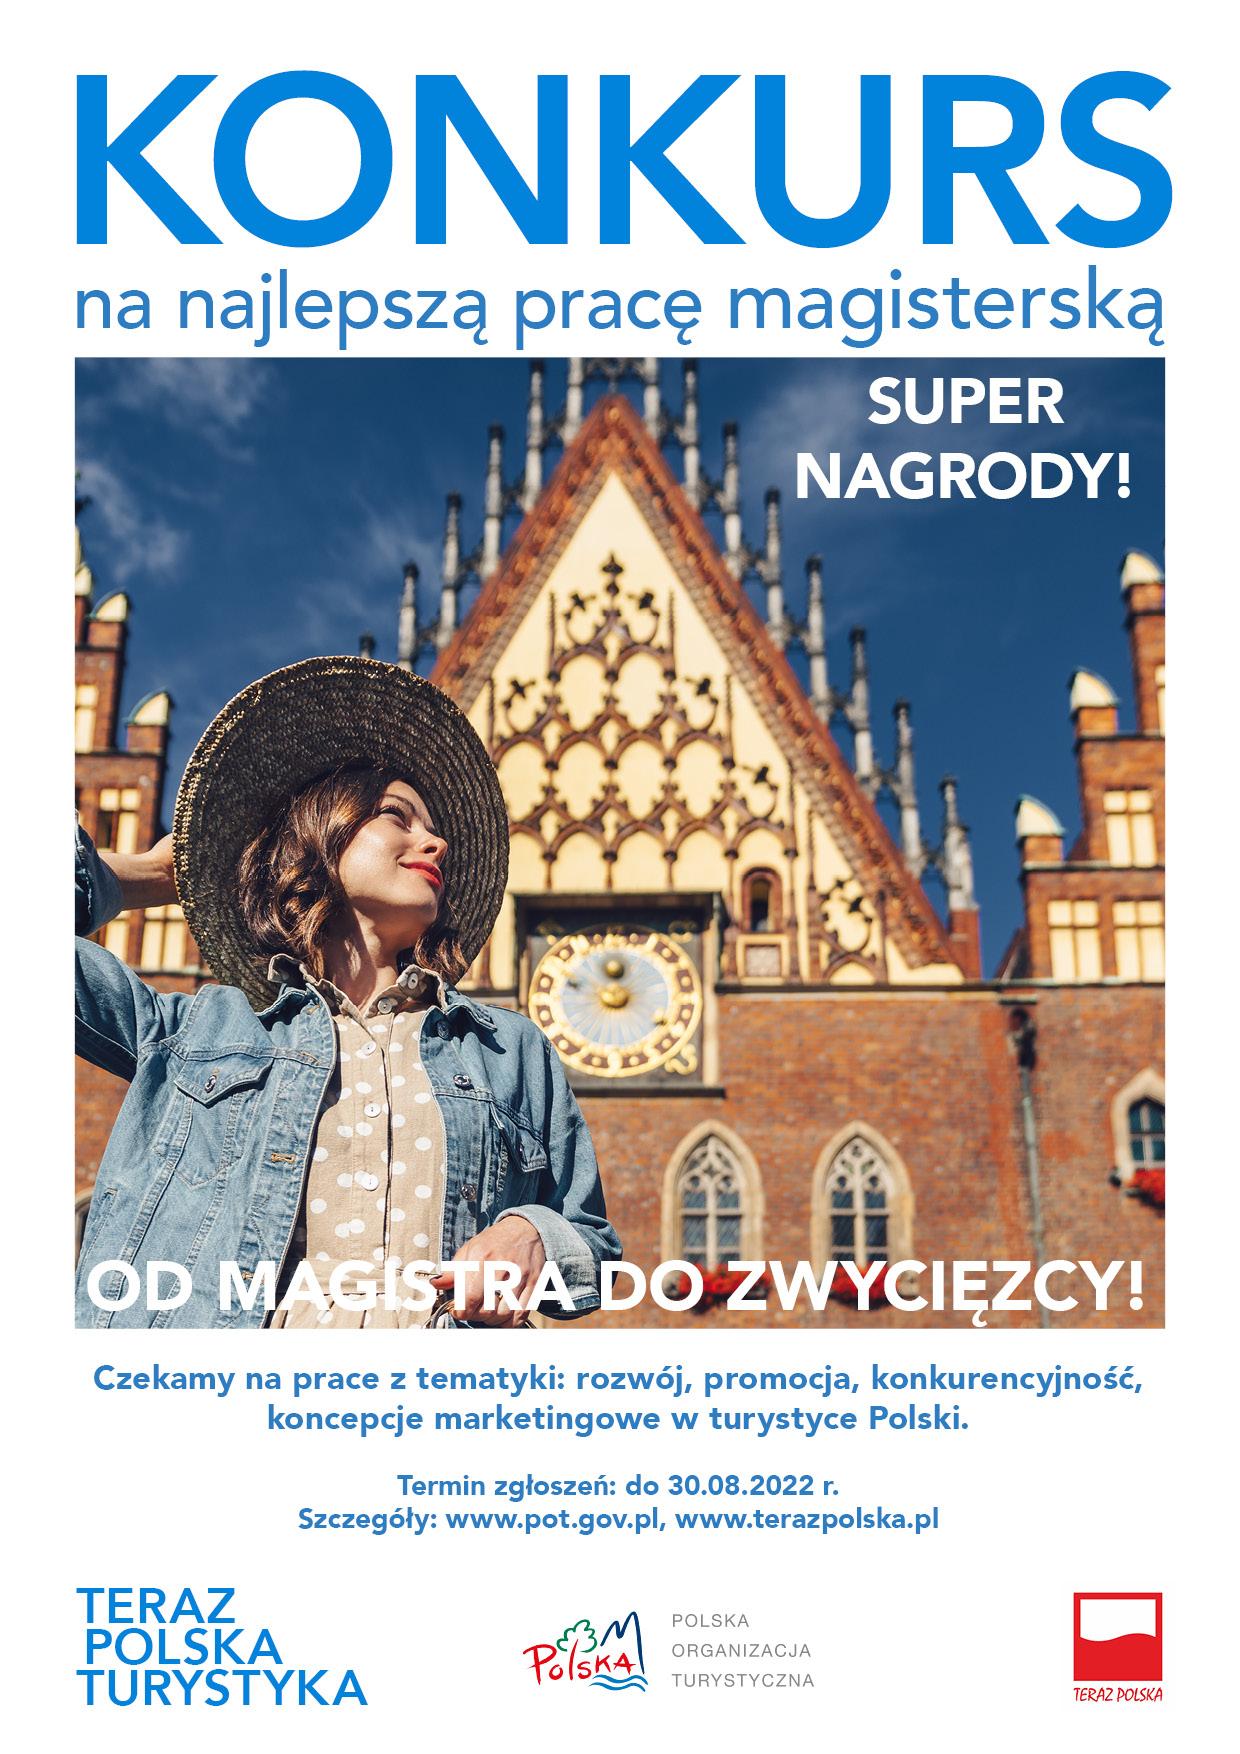 Konkurs na Najlepszą Pracę Magisterską z Turystyki pt. TERAZ POLSKA TURYSTYKA